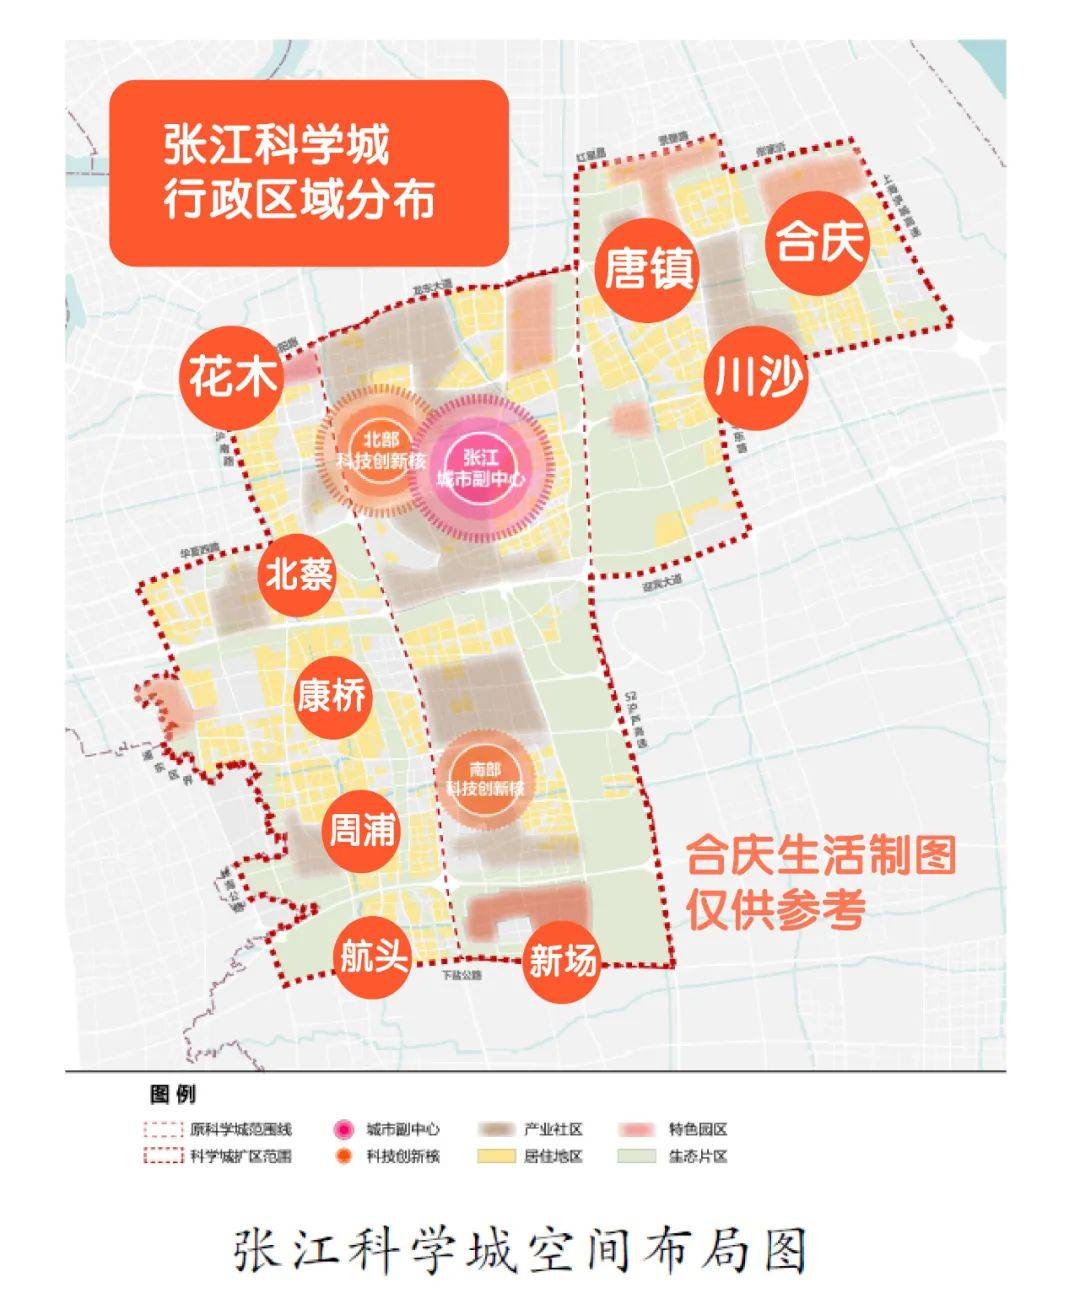 对张江科学城总体空间进行优化调整,规划面积由95平方公里扩大至约220